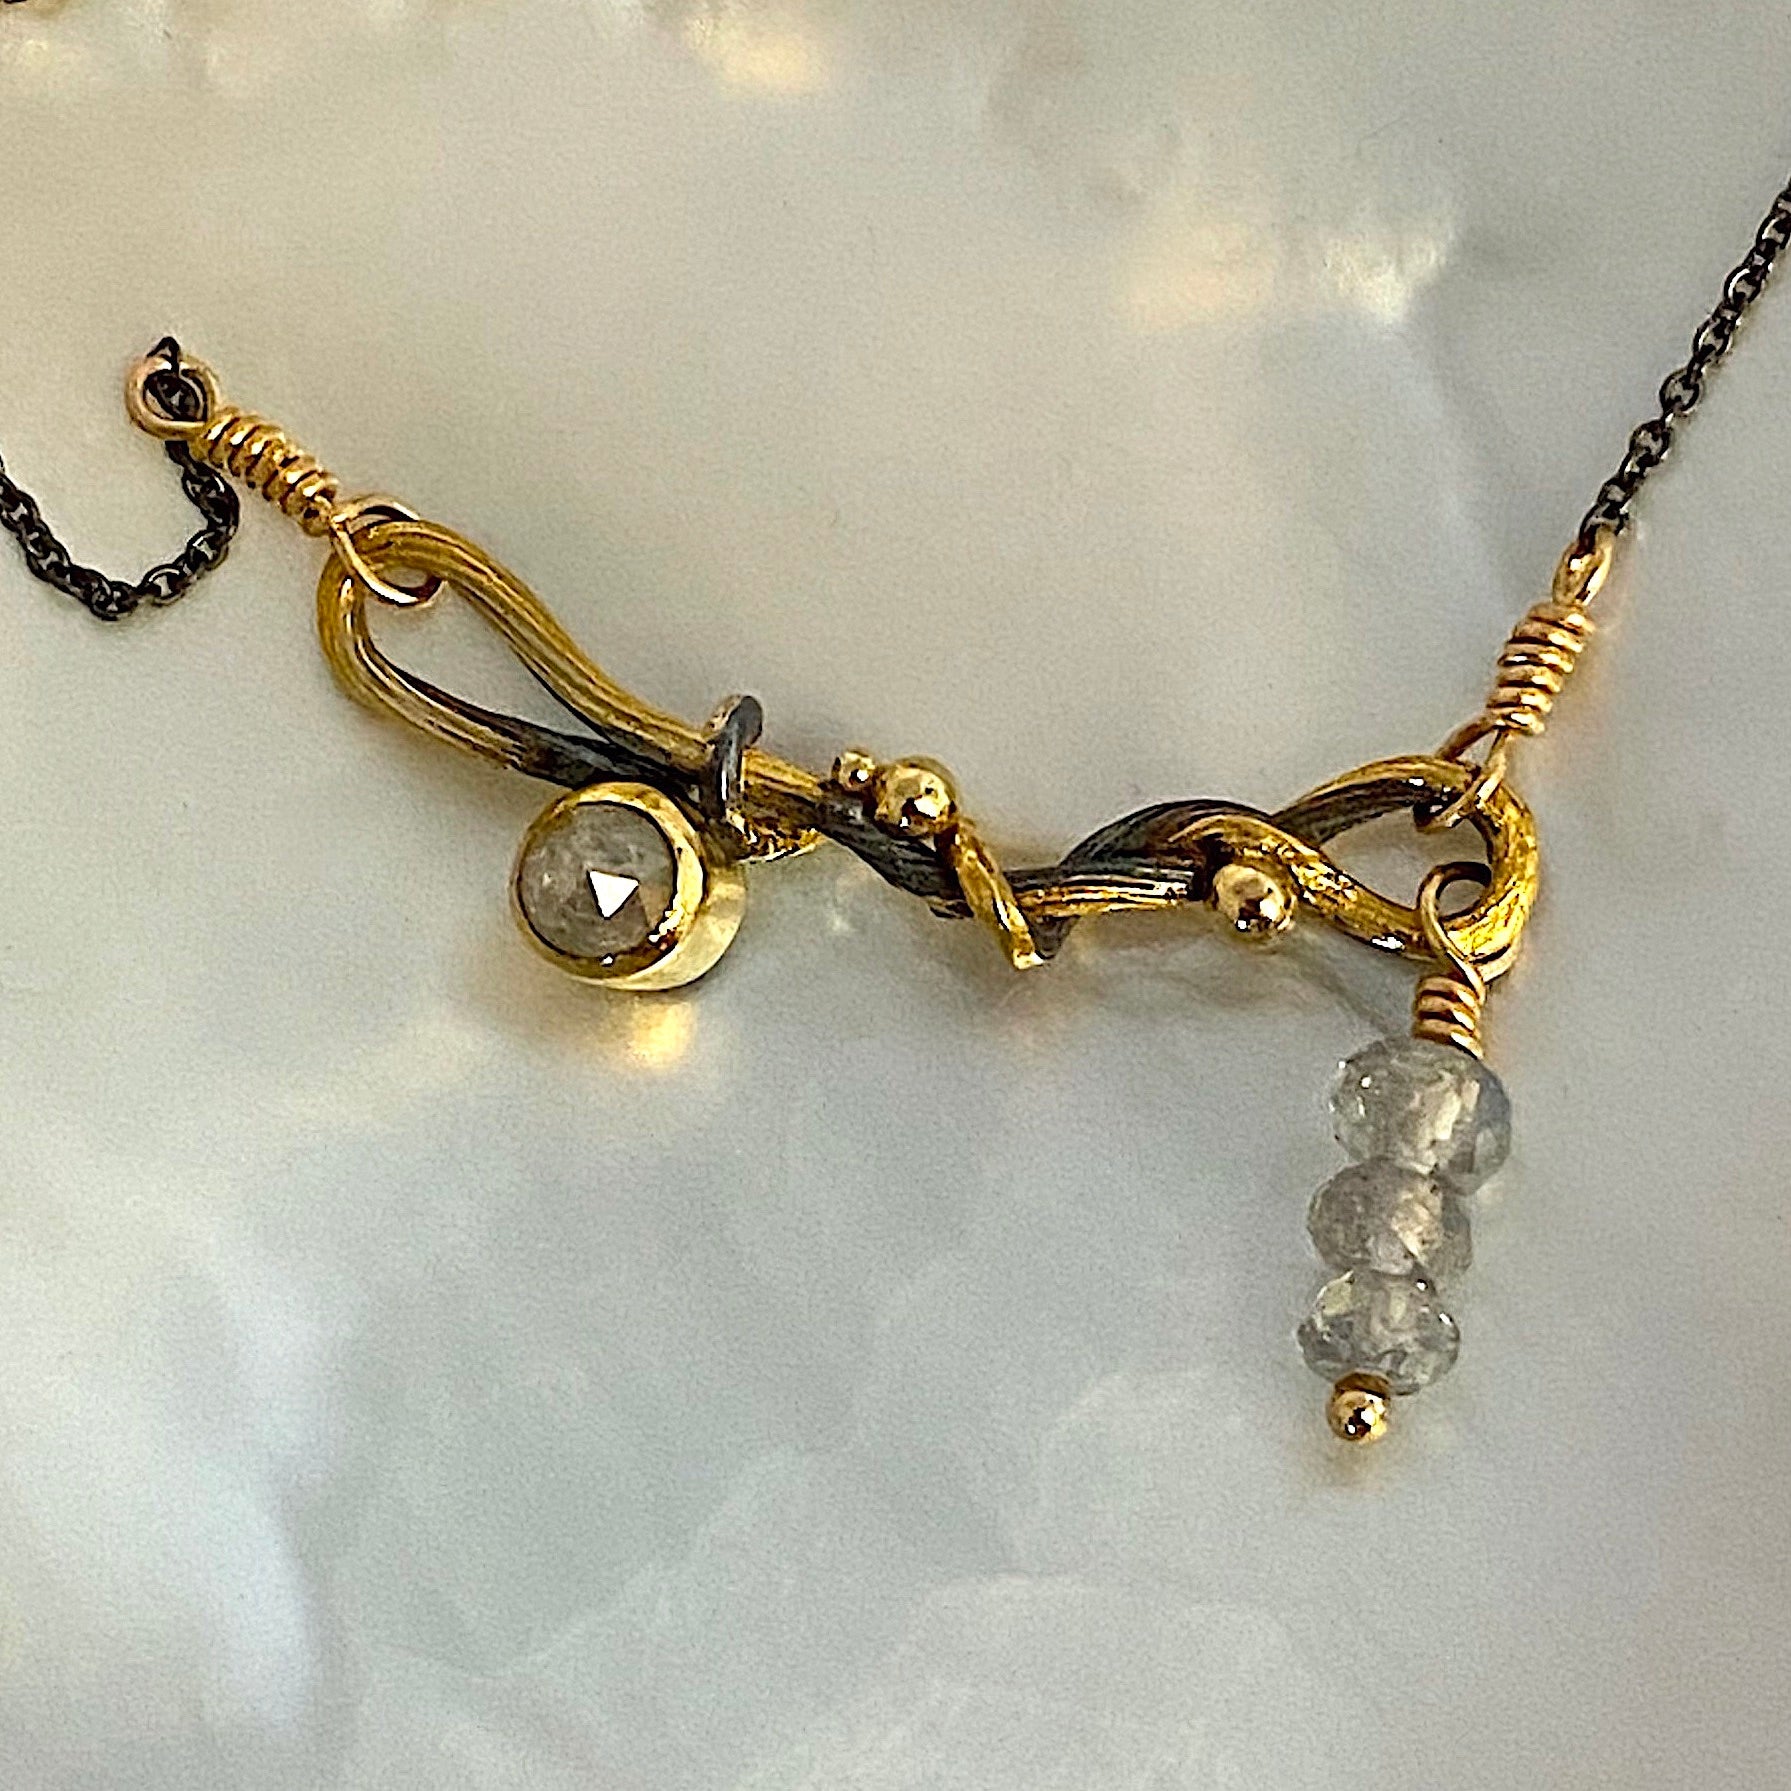 Seafire silver necklace